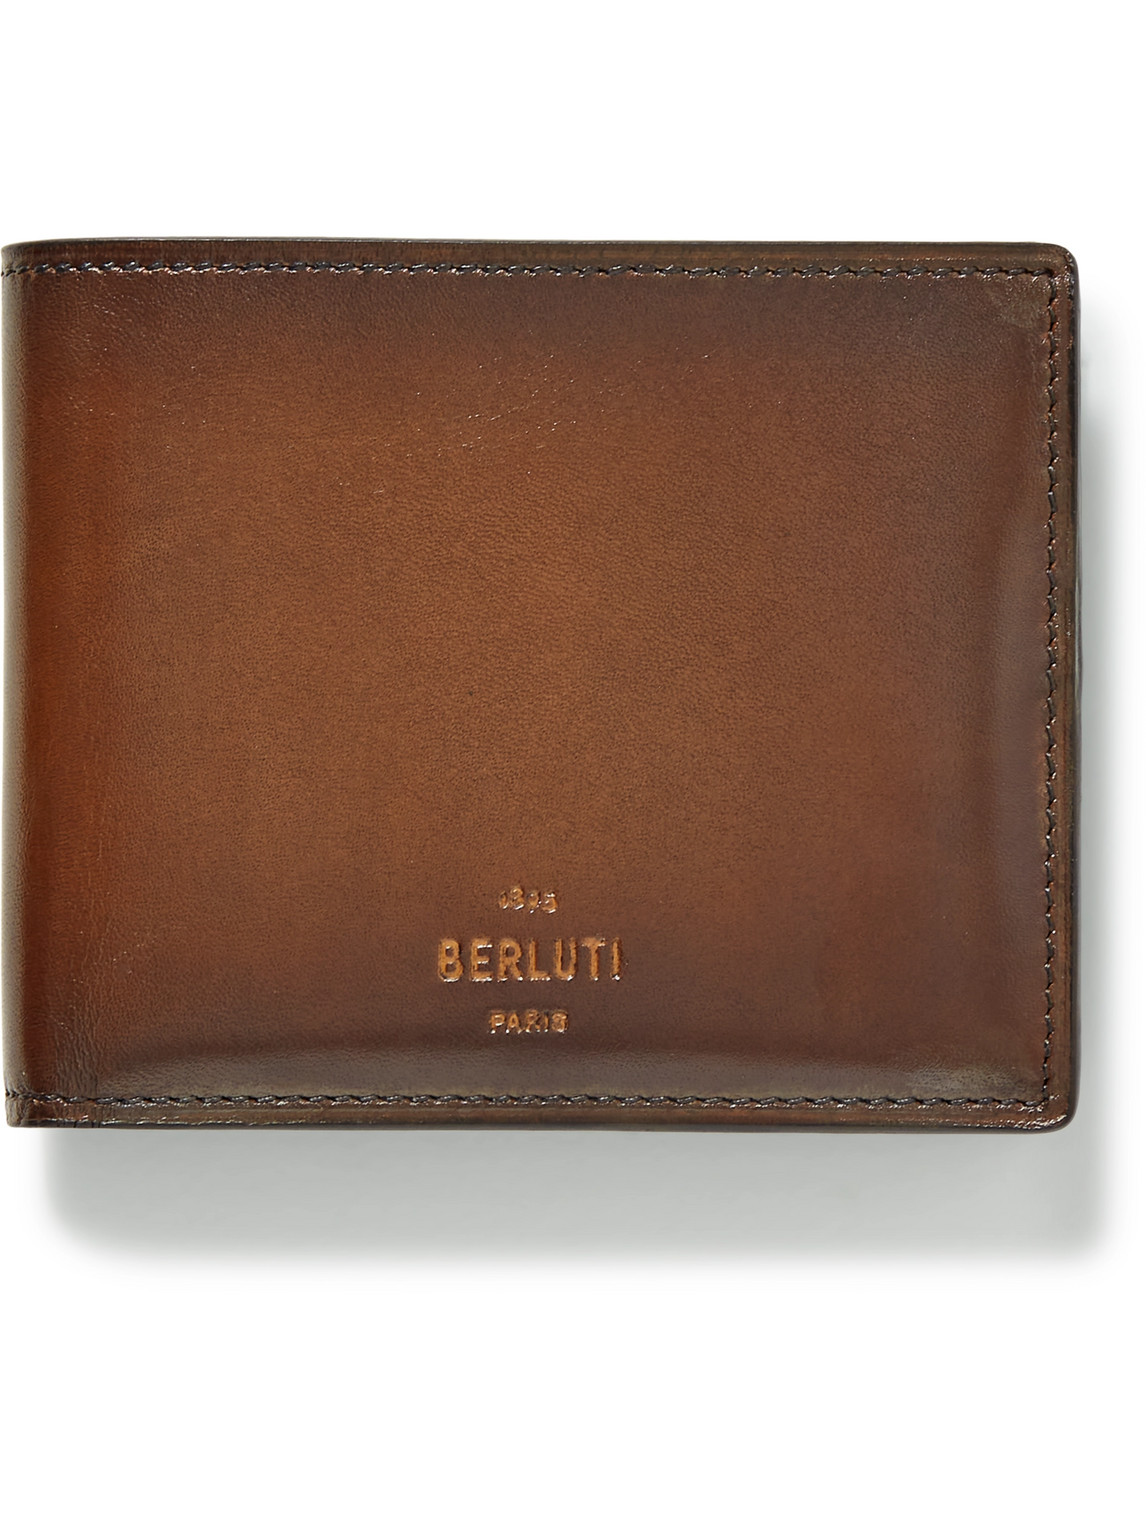 Venezia Leather Billfold Wallet